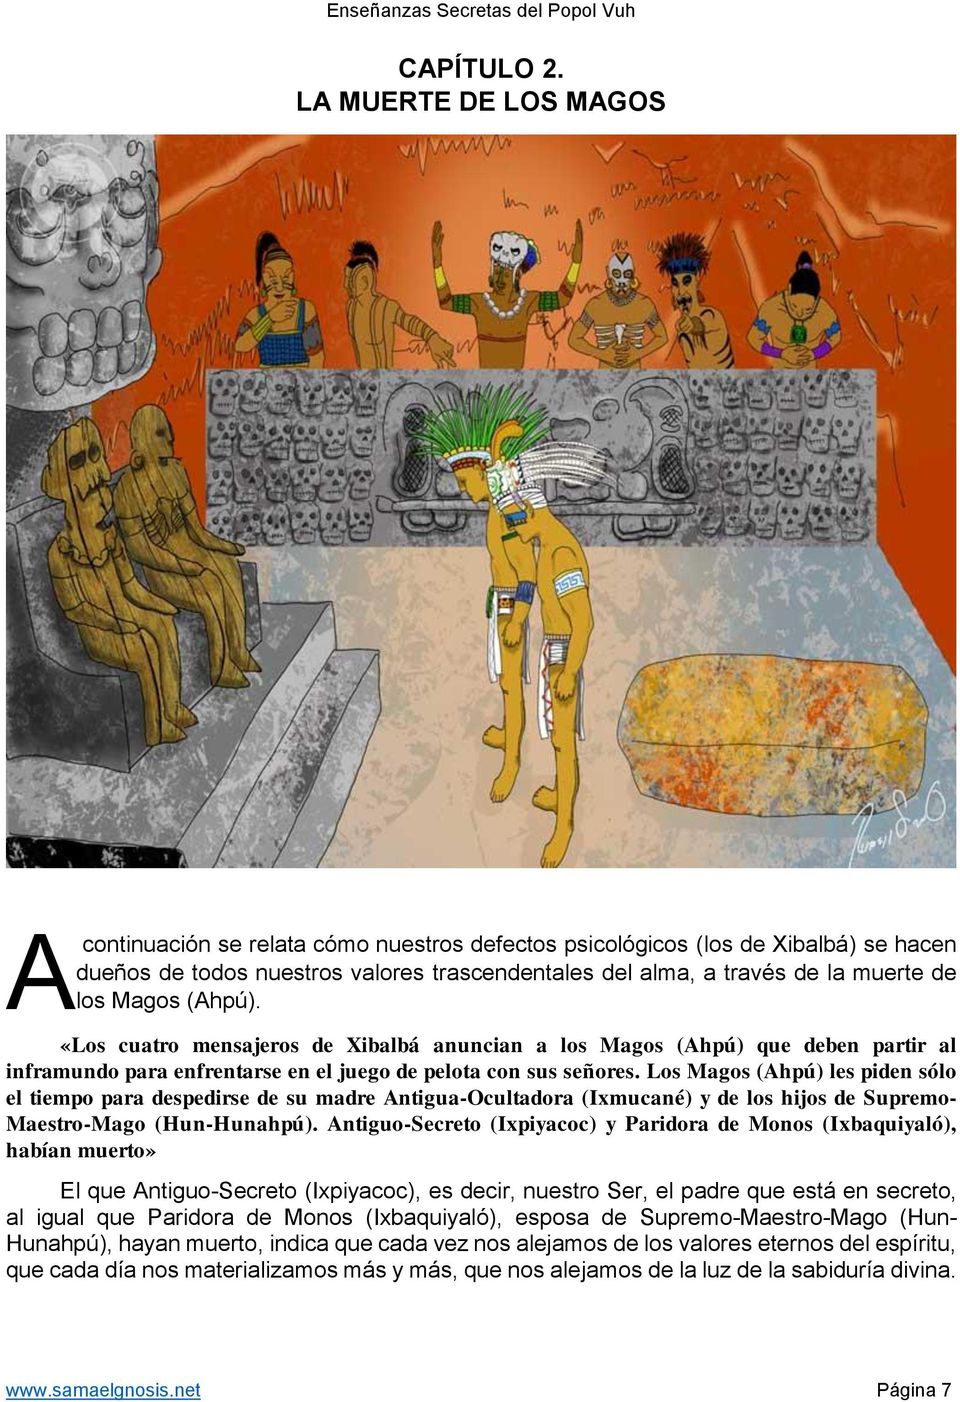 El Fin de los Señores de Xibalbá. Libro Enseñanzas Secretas del Popol Vuh.  Gnosis